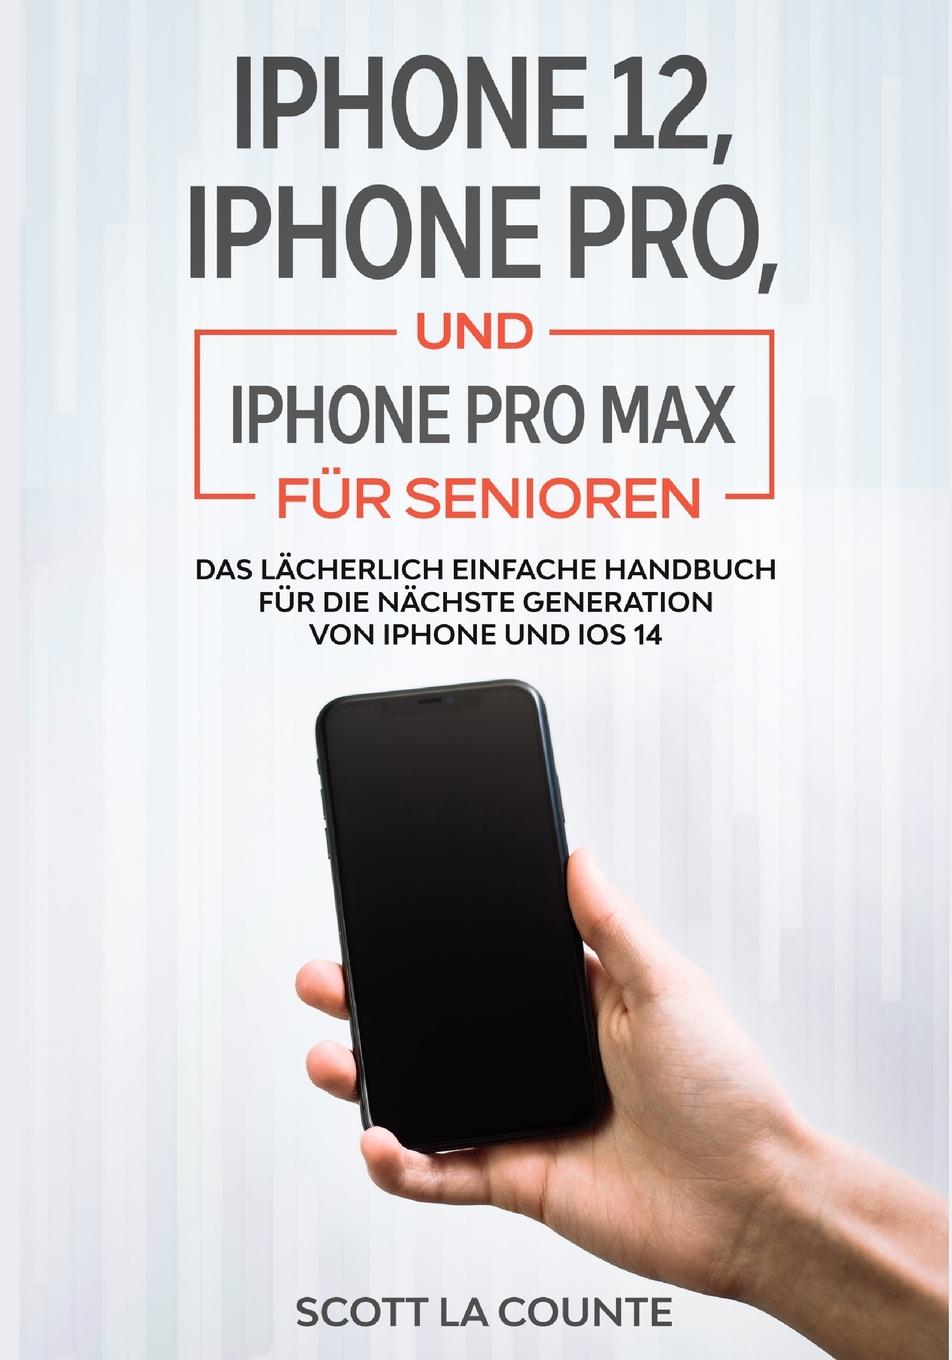 Carte iPhone 12, iPhone Pro, und iPhone Pro Max Fur Senioren 